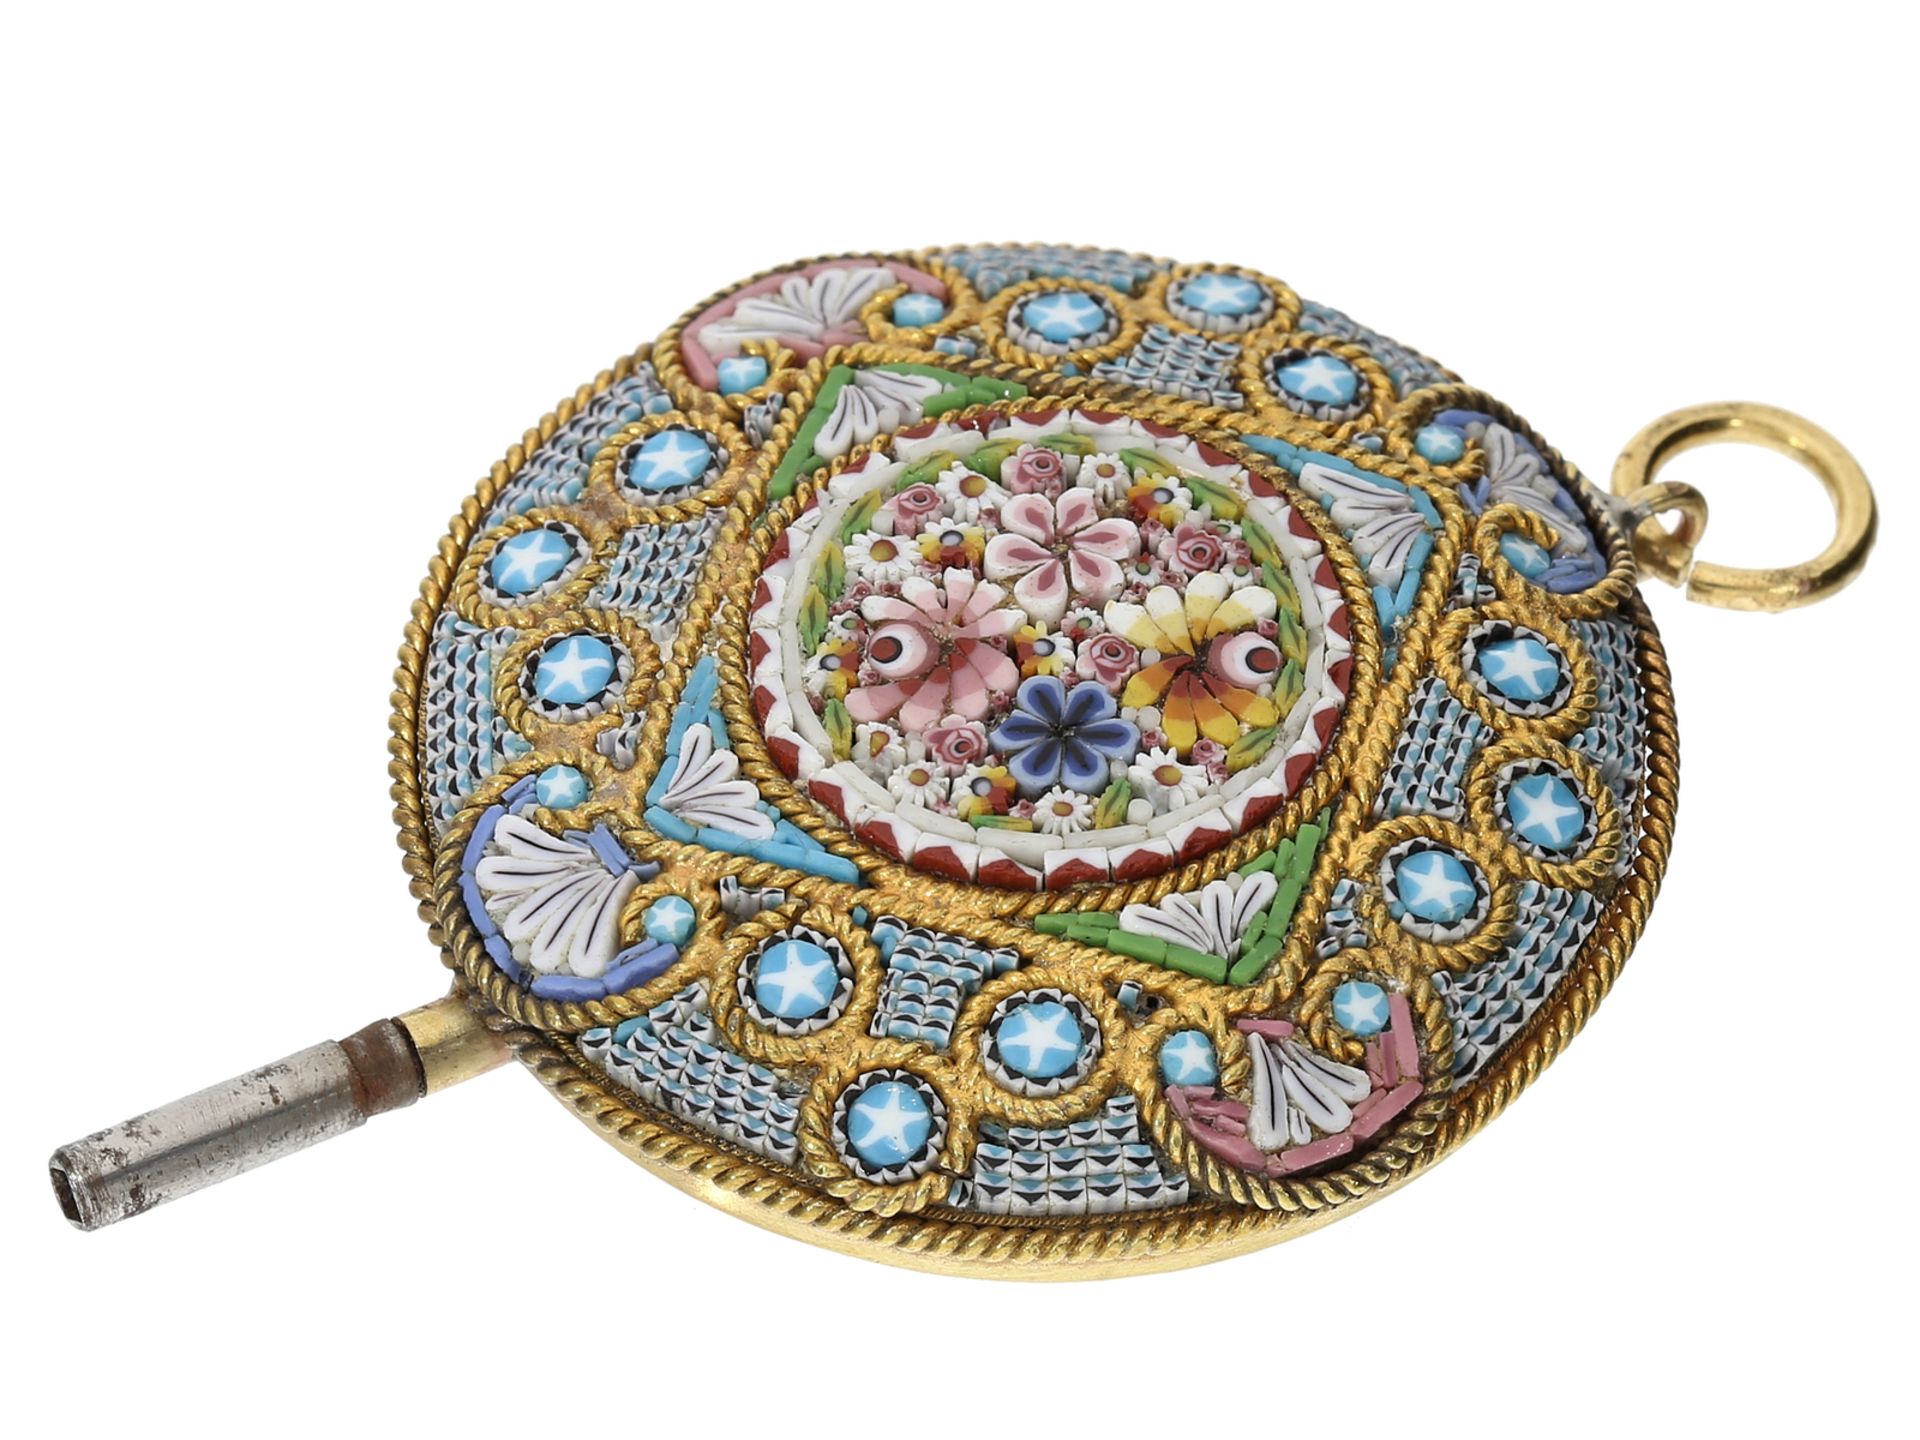 Uhrenschlüssel: extrem seltener Pietra-Dura Mikromosaik Spindeluhrenschlüssel, um 1800 - Bild 2 aus 3